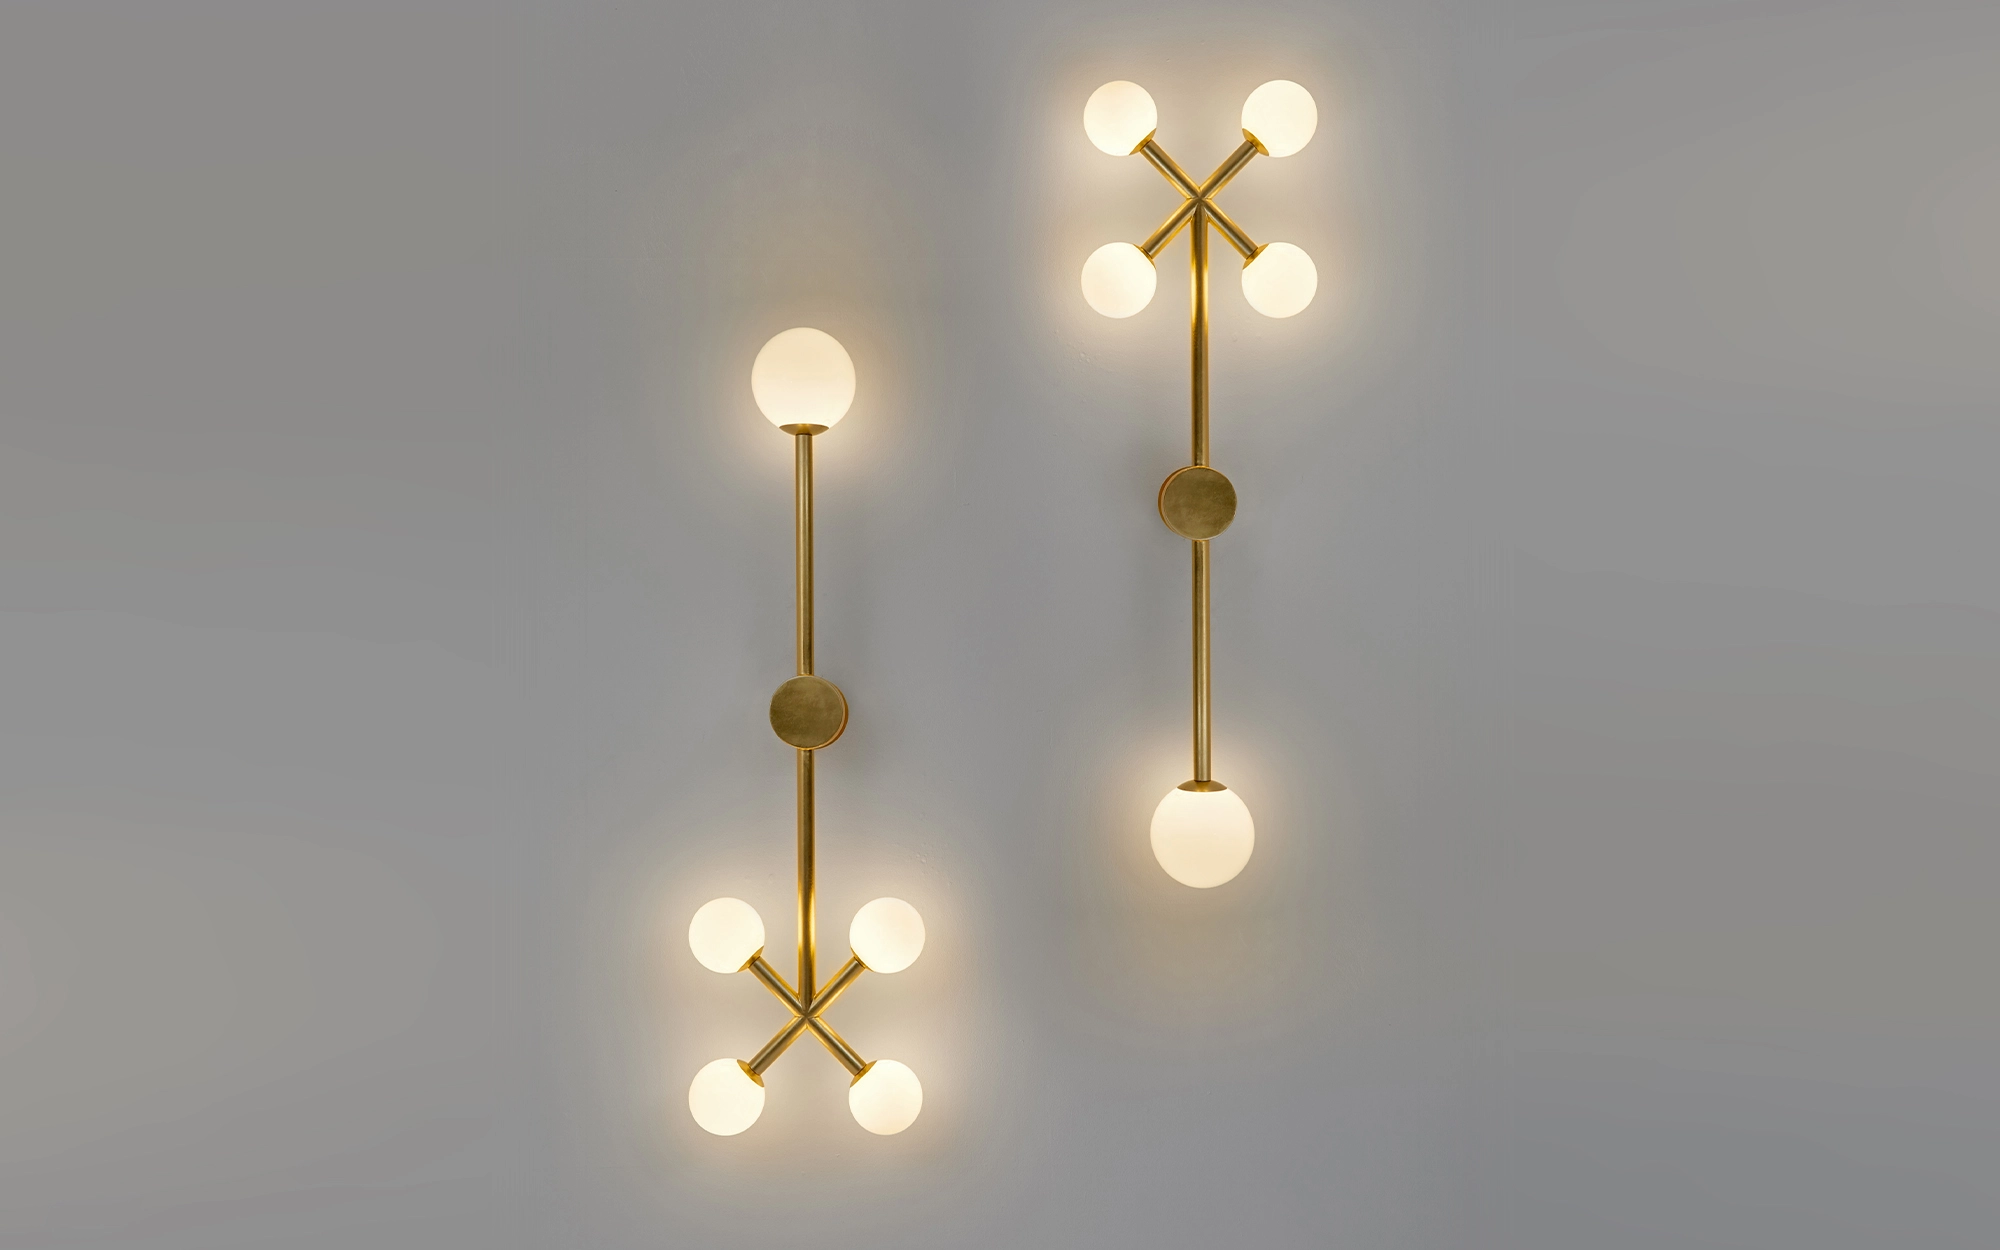 Wink Wall light - Jaime Hayon - Mirror - Galerie kreo